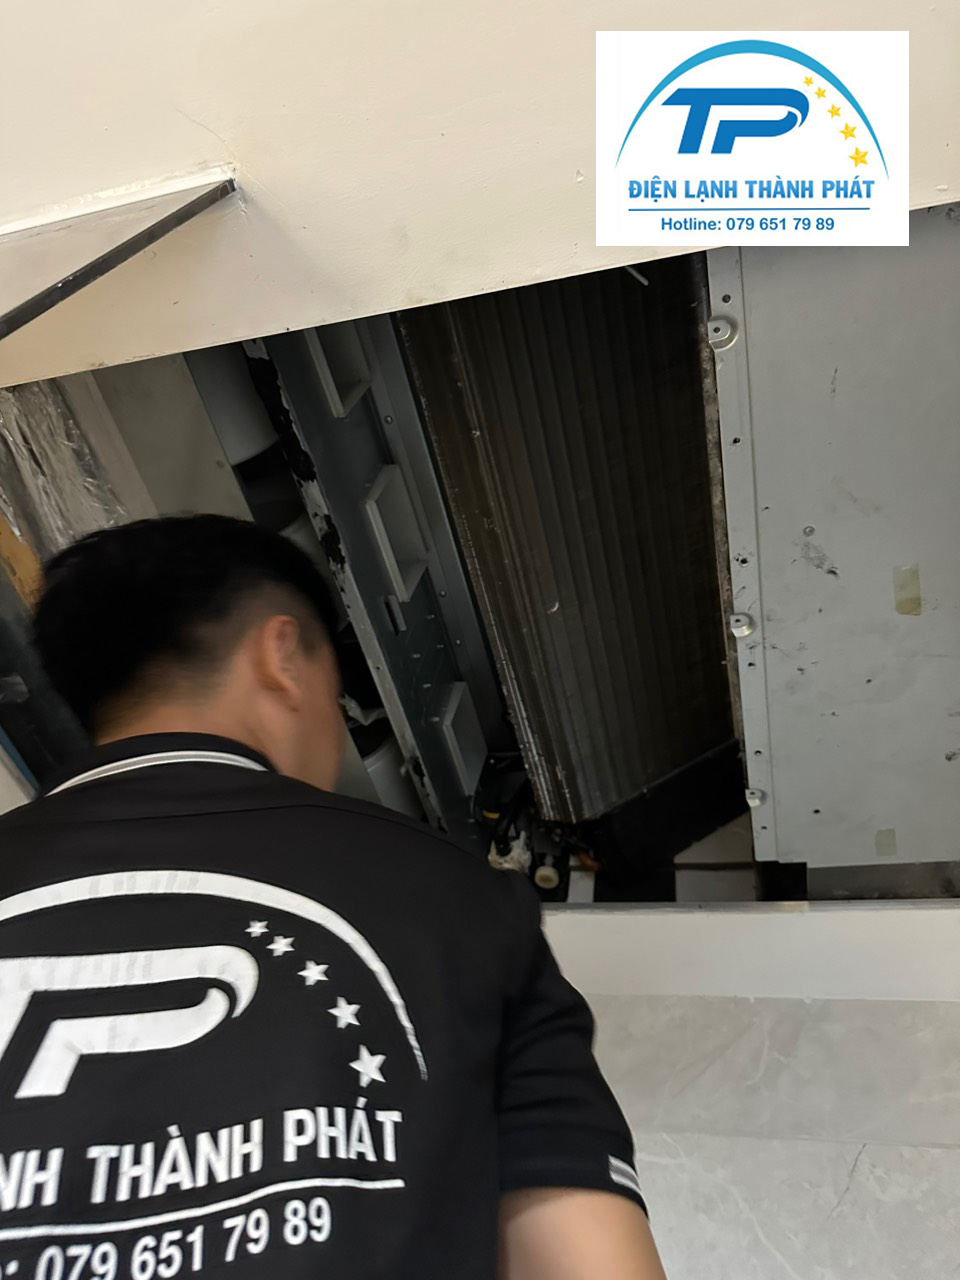 Quy trình vệ sinh máy lạnh chuyên nghiệp, đạt tiêu chuẩn an toàn cao.